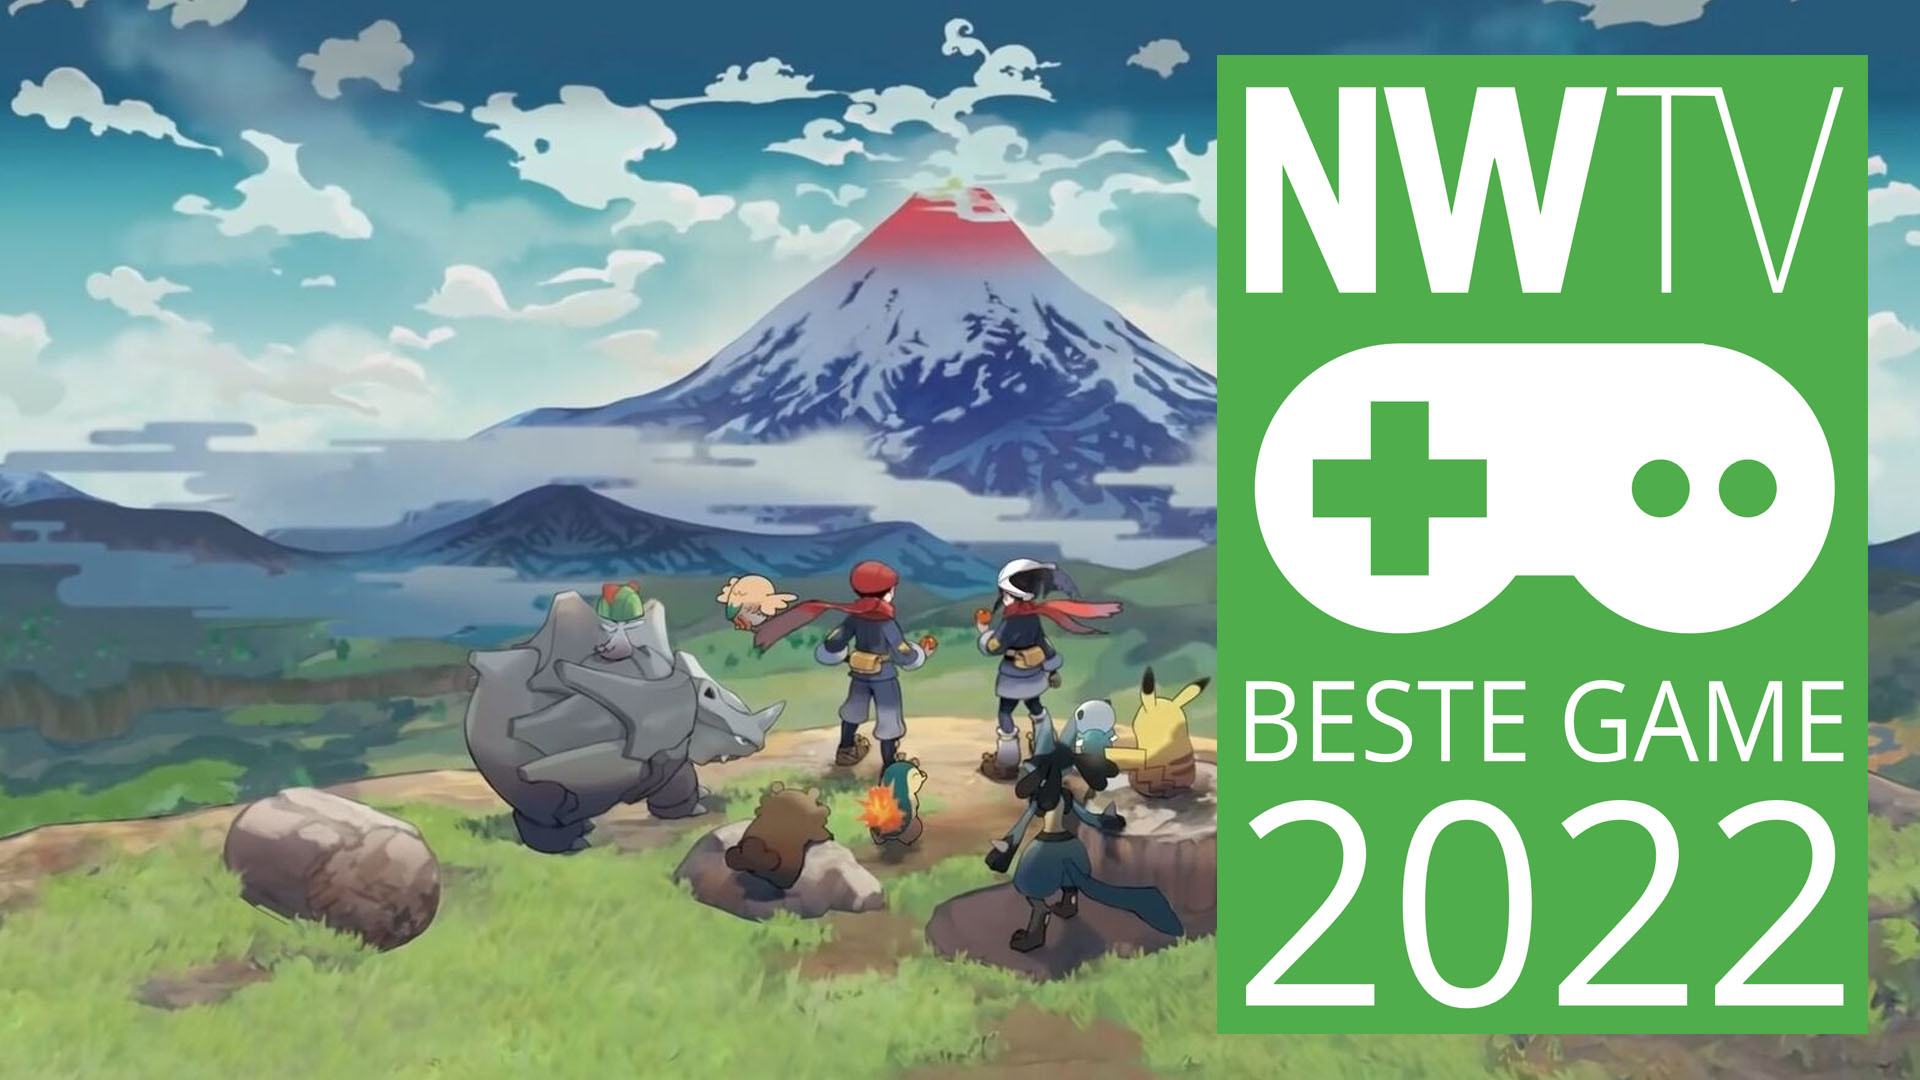 NWTV-Awards 2022: Pokémon Legends: Arceus is de beste game van 2022